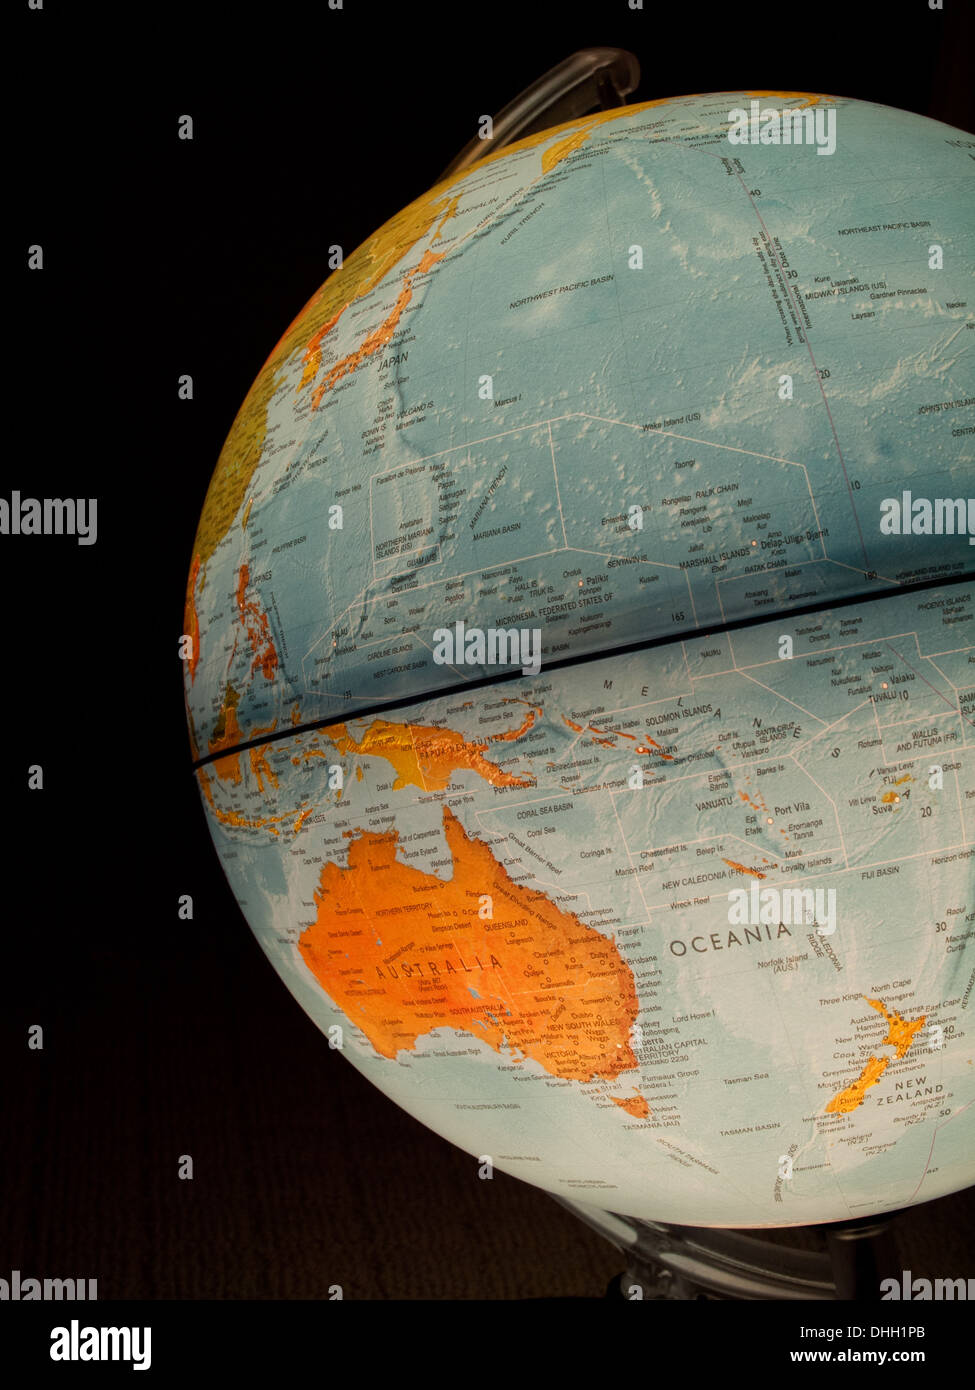 Ein Blick auf Australien, Neuseeland und Ozeanien auf einem schönen, beleuchteten Globus. Stockfoto